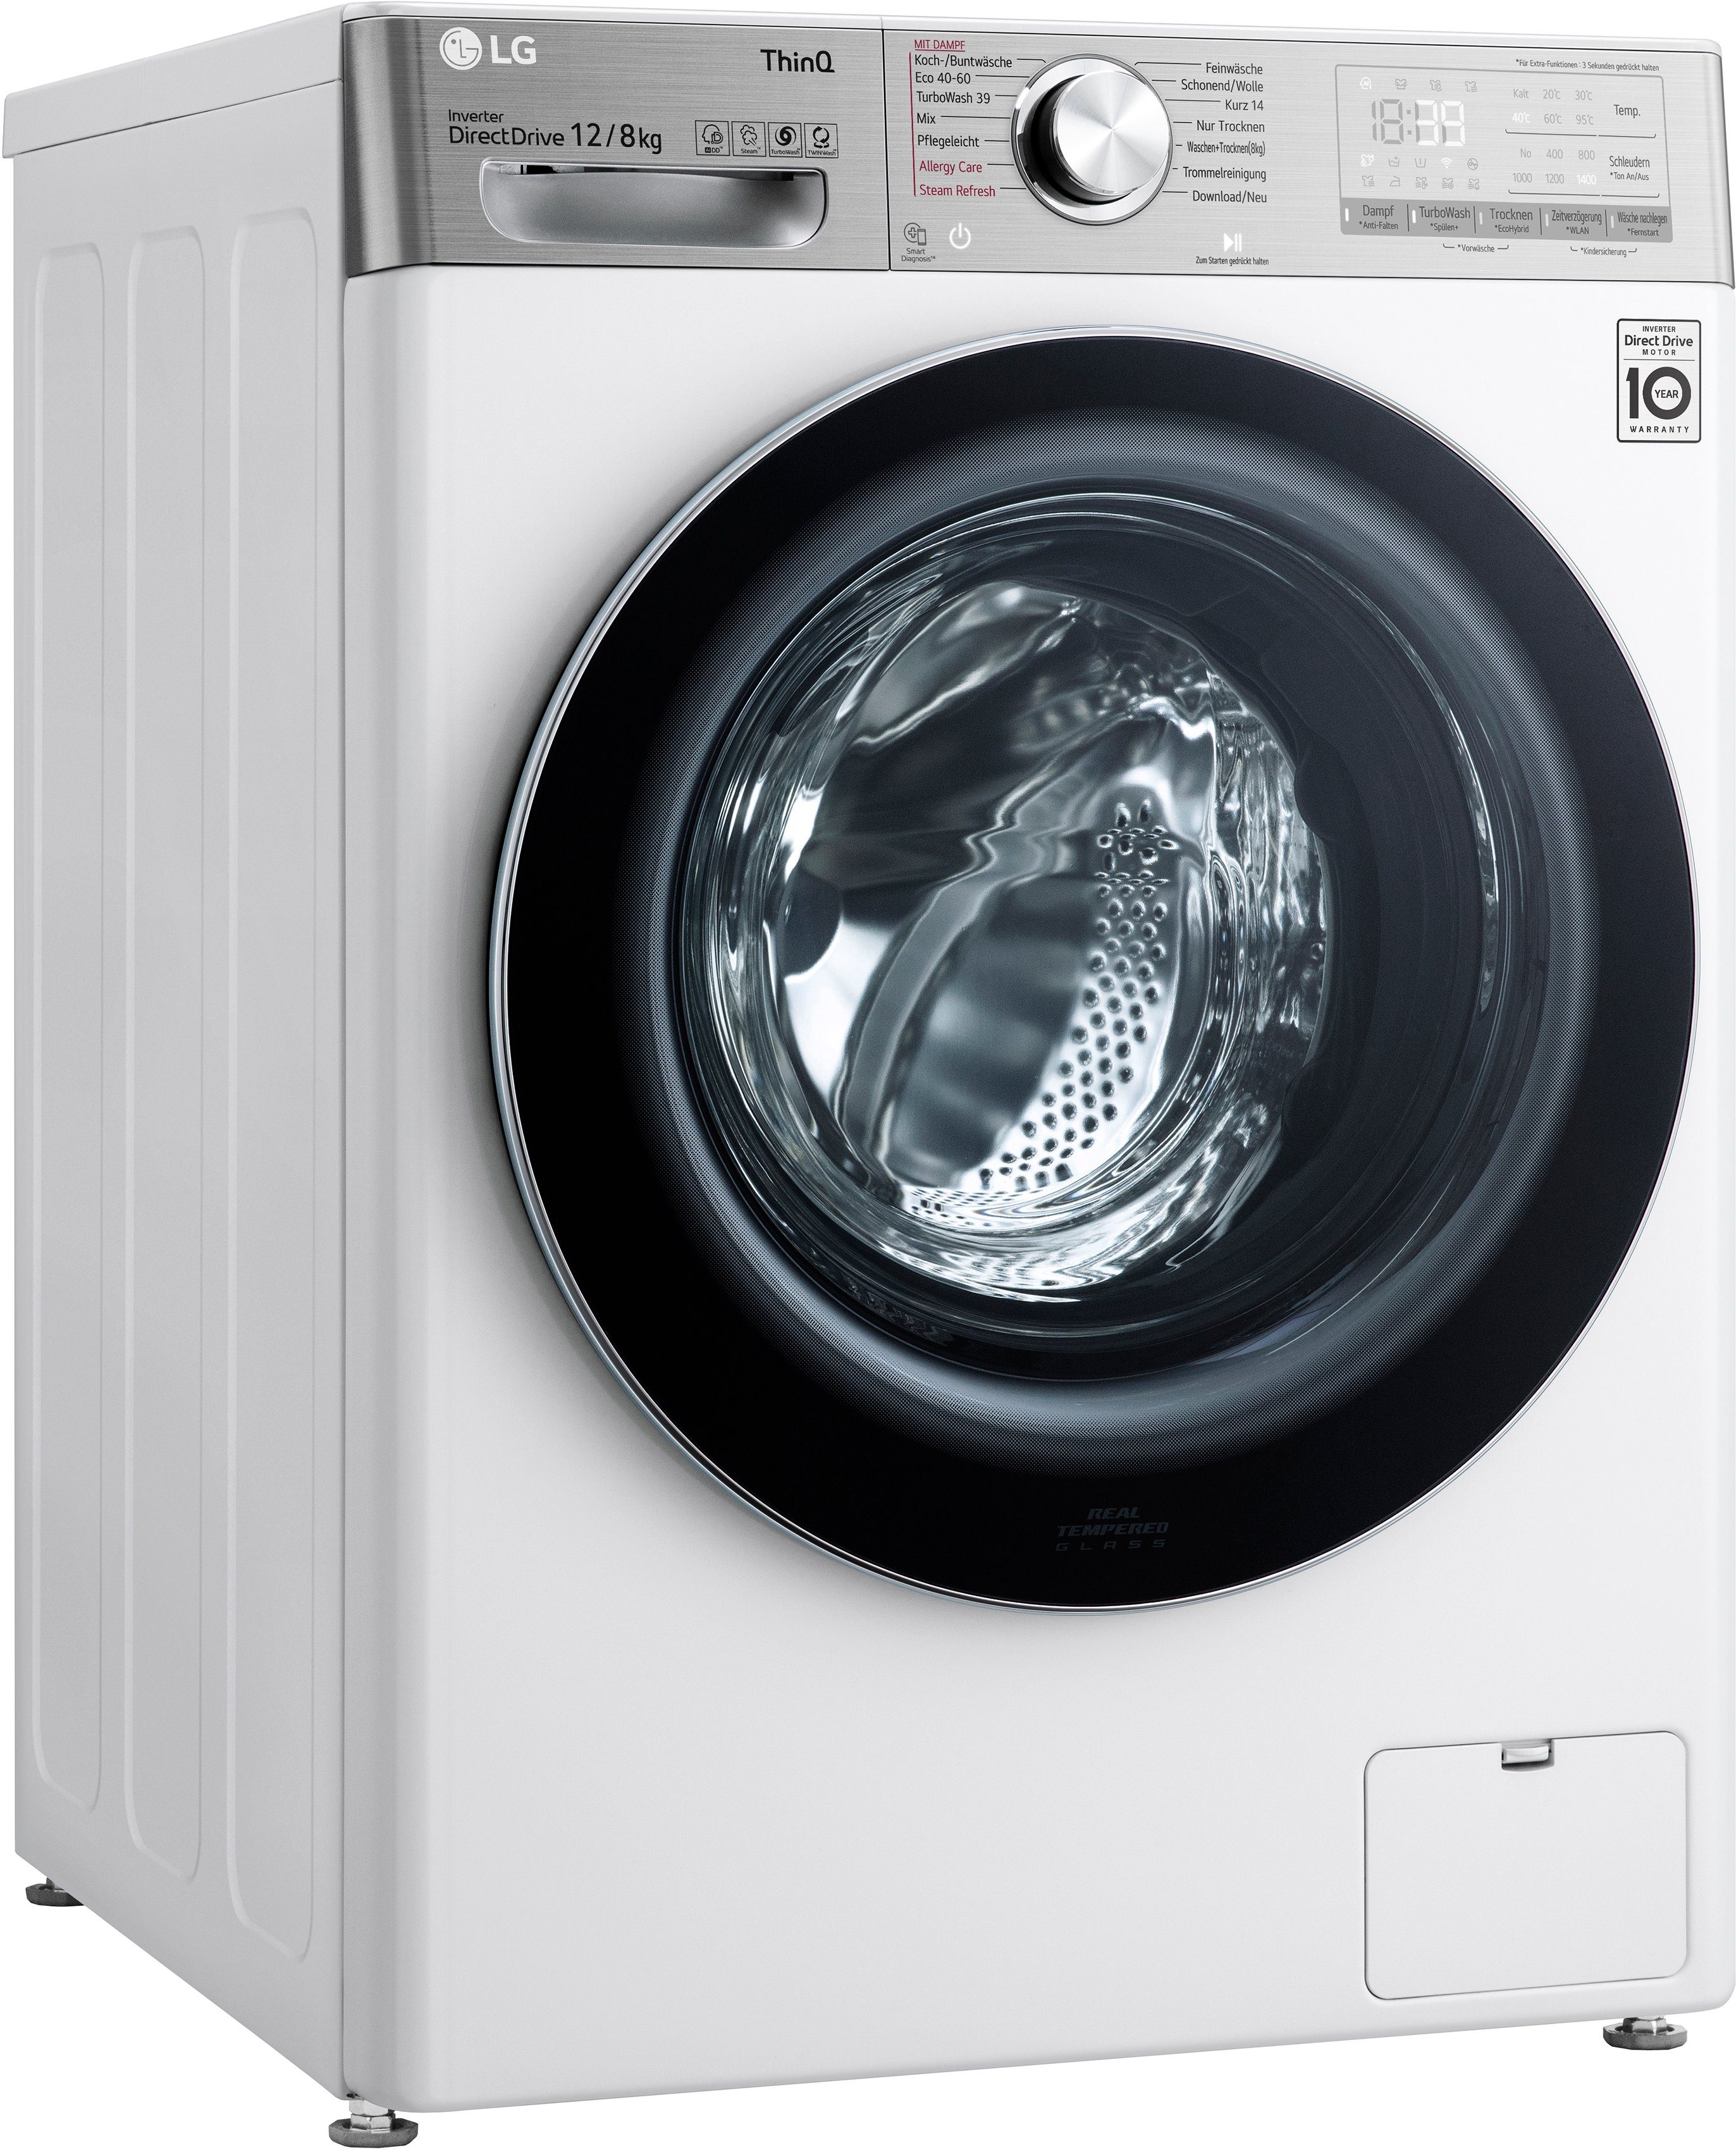 [Vertrauen zuerst und niedriger Preis] LG Waschtrockner V9WD128H2, 12 39 in Waschen 8 1400 nur Minuten TurboWash® kg, U/min, - kg